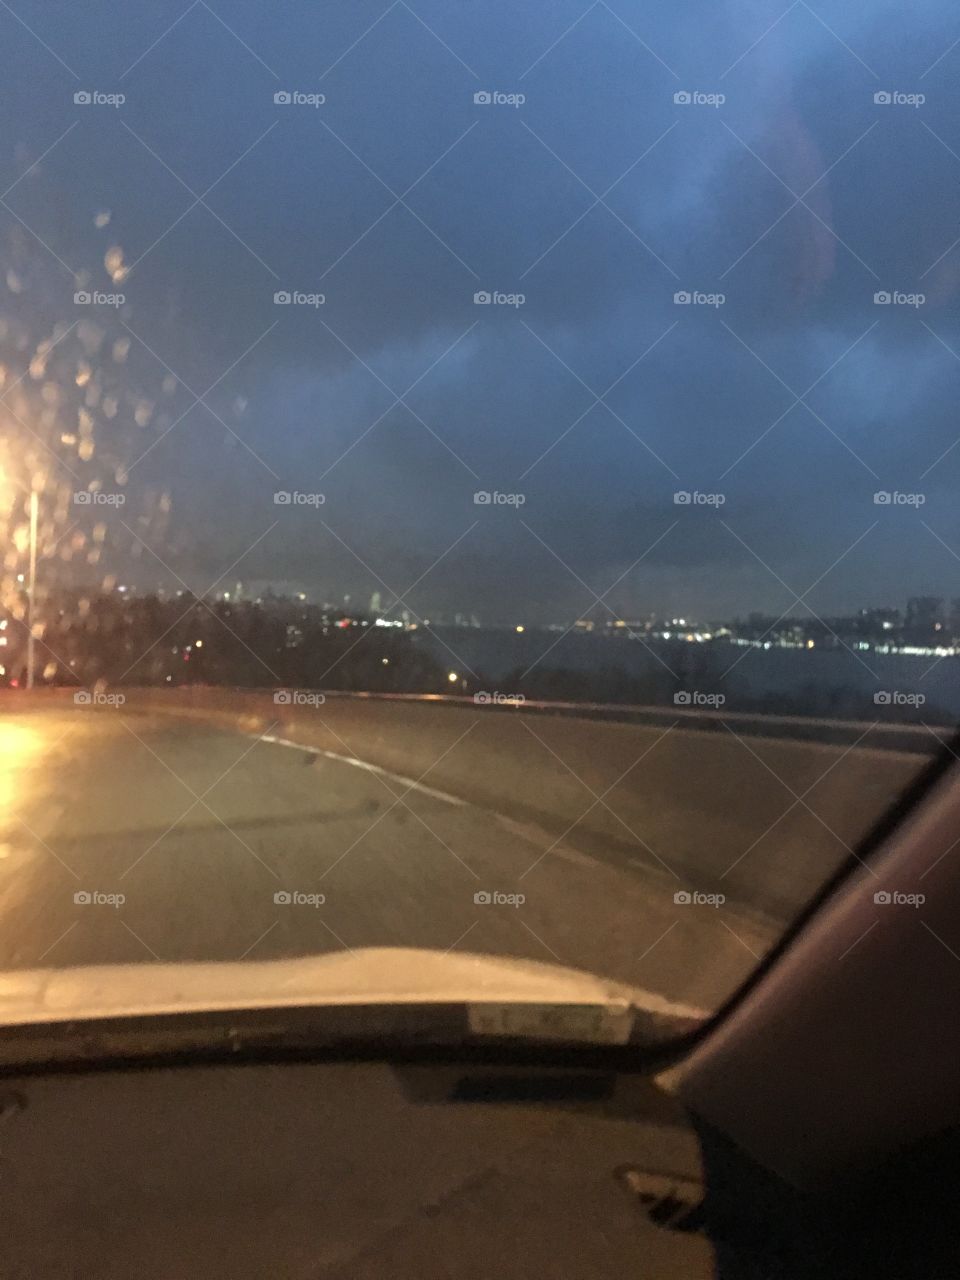 City from car on rainy night